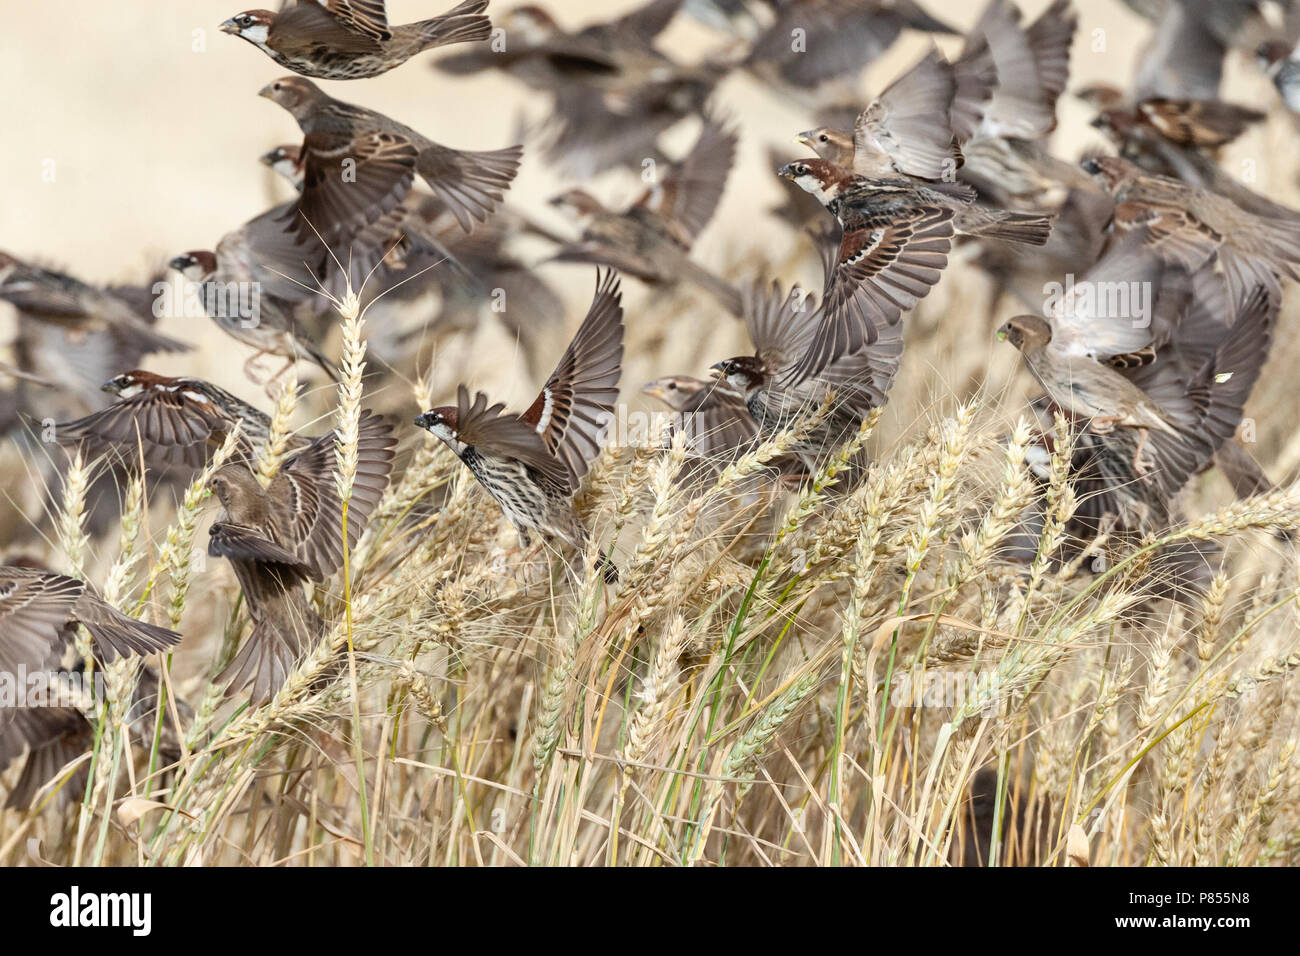 Volée de moineaux espagnols (Passer hispaniolensis) durant la migration de printemps dans le sud du Néguev, en Israël. Banque D'Images